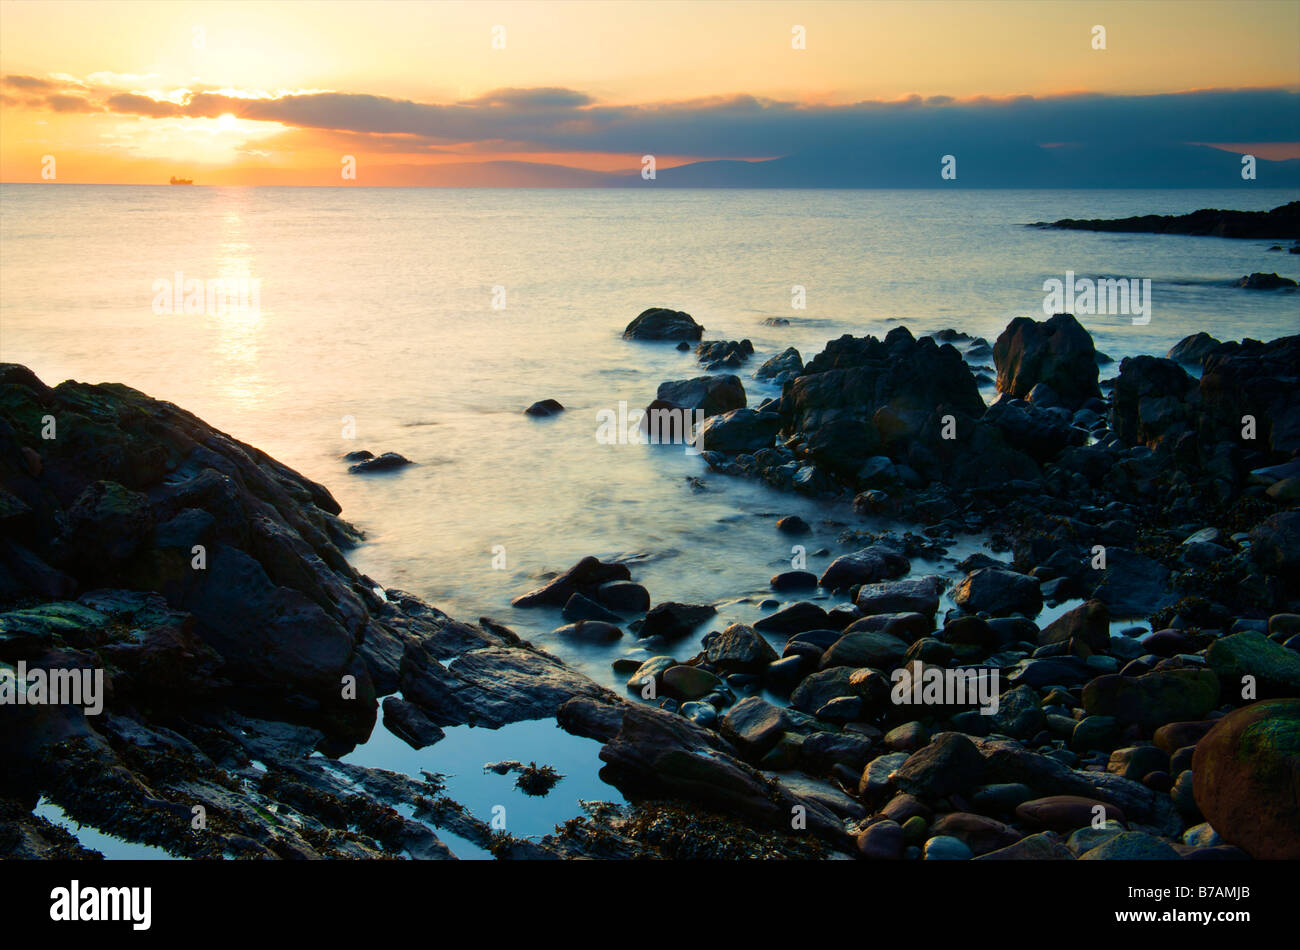 Seascape view de la clyde au coucher du soleil sur un éperon rocheux à marée basse Banque D'Images